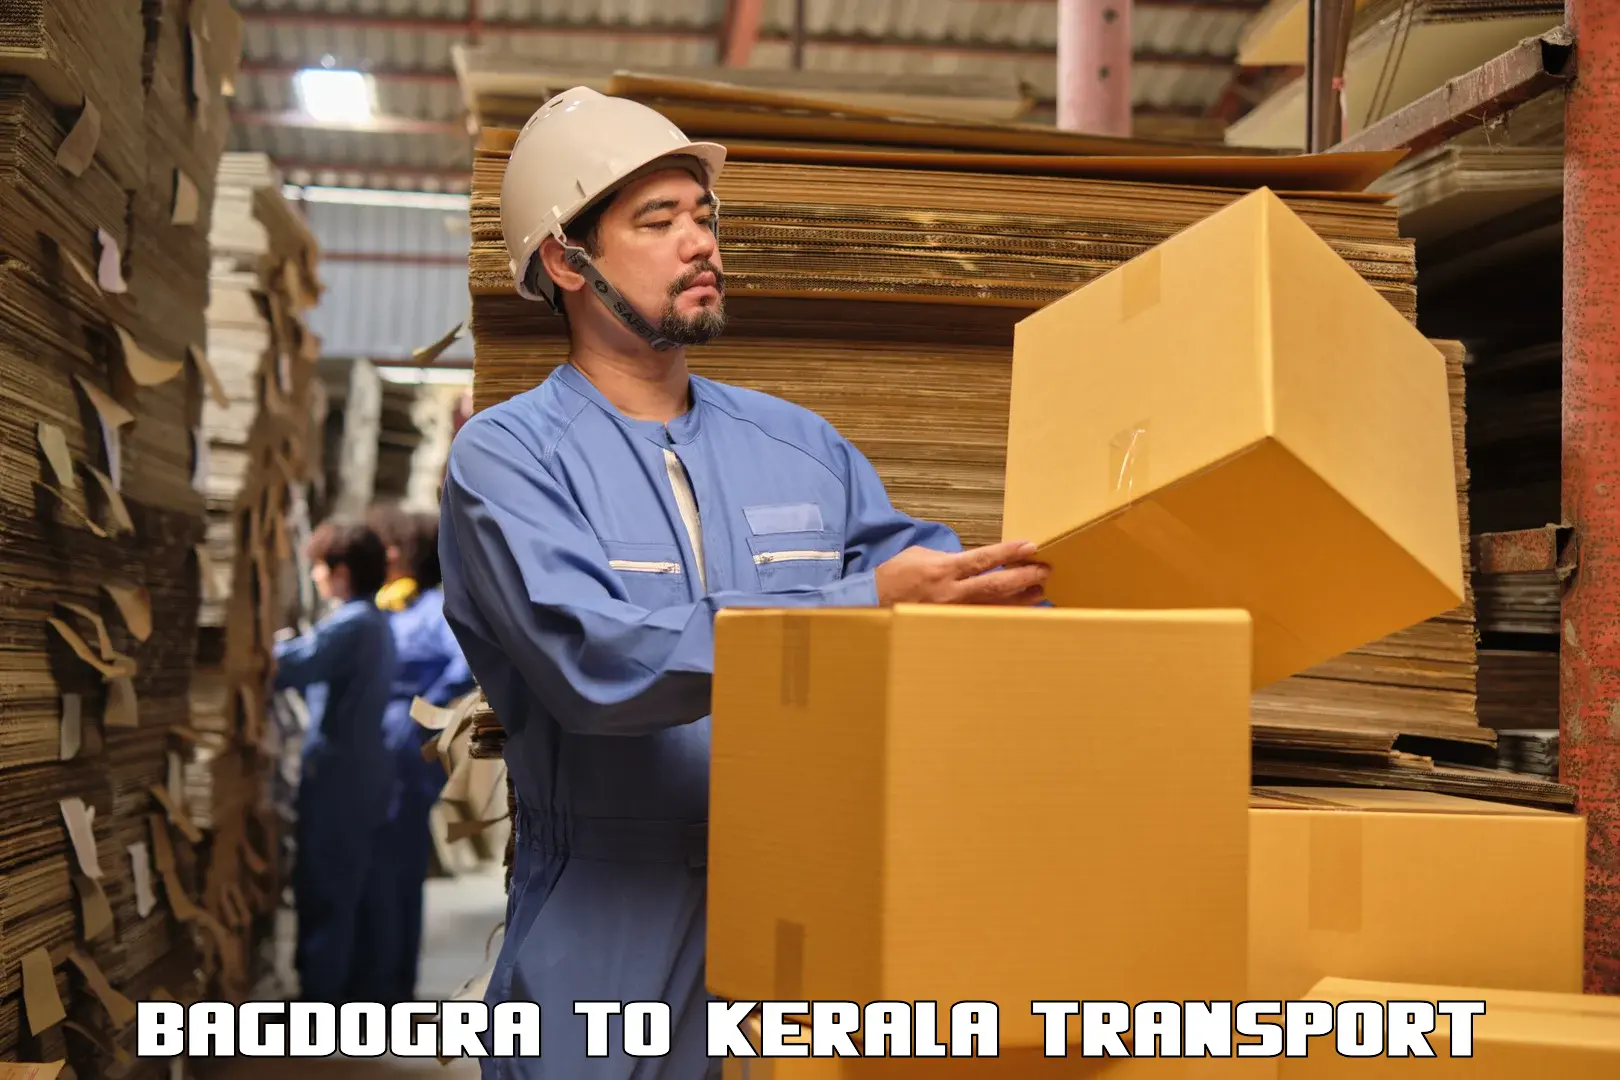 Shipping partner Bagdogra to IIIT Kottayam